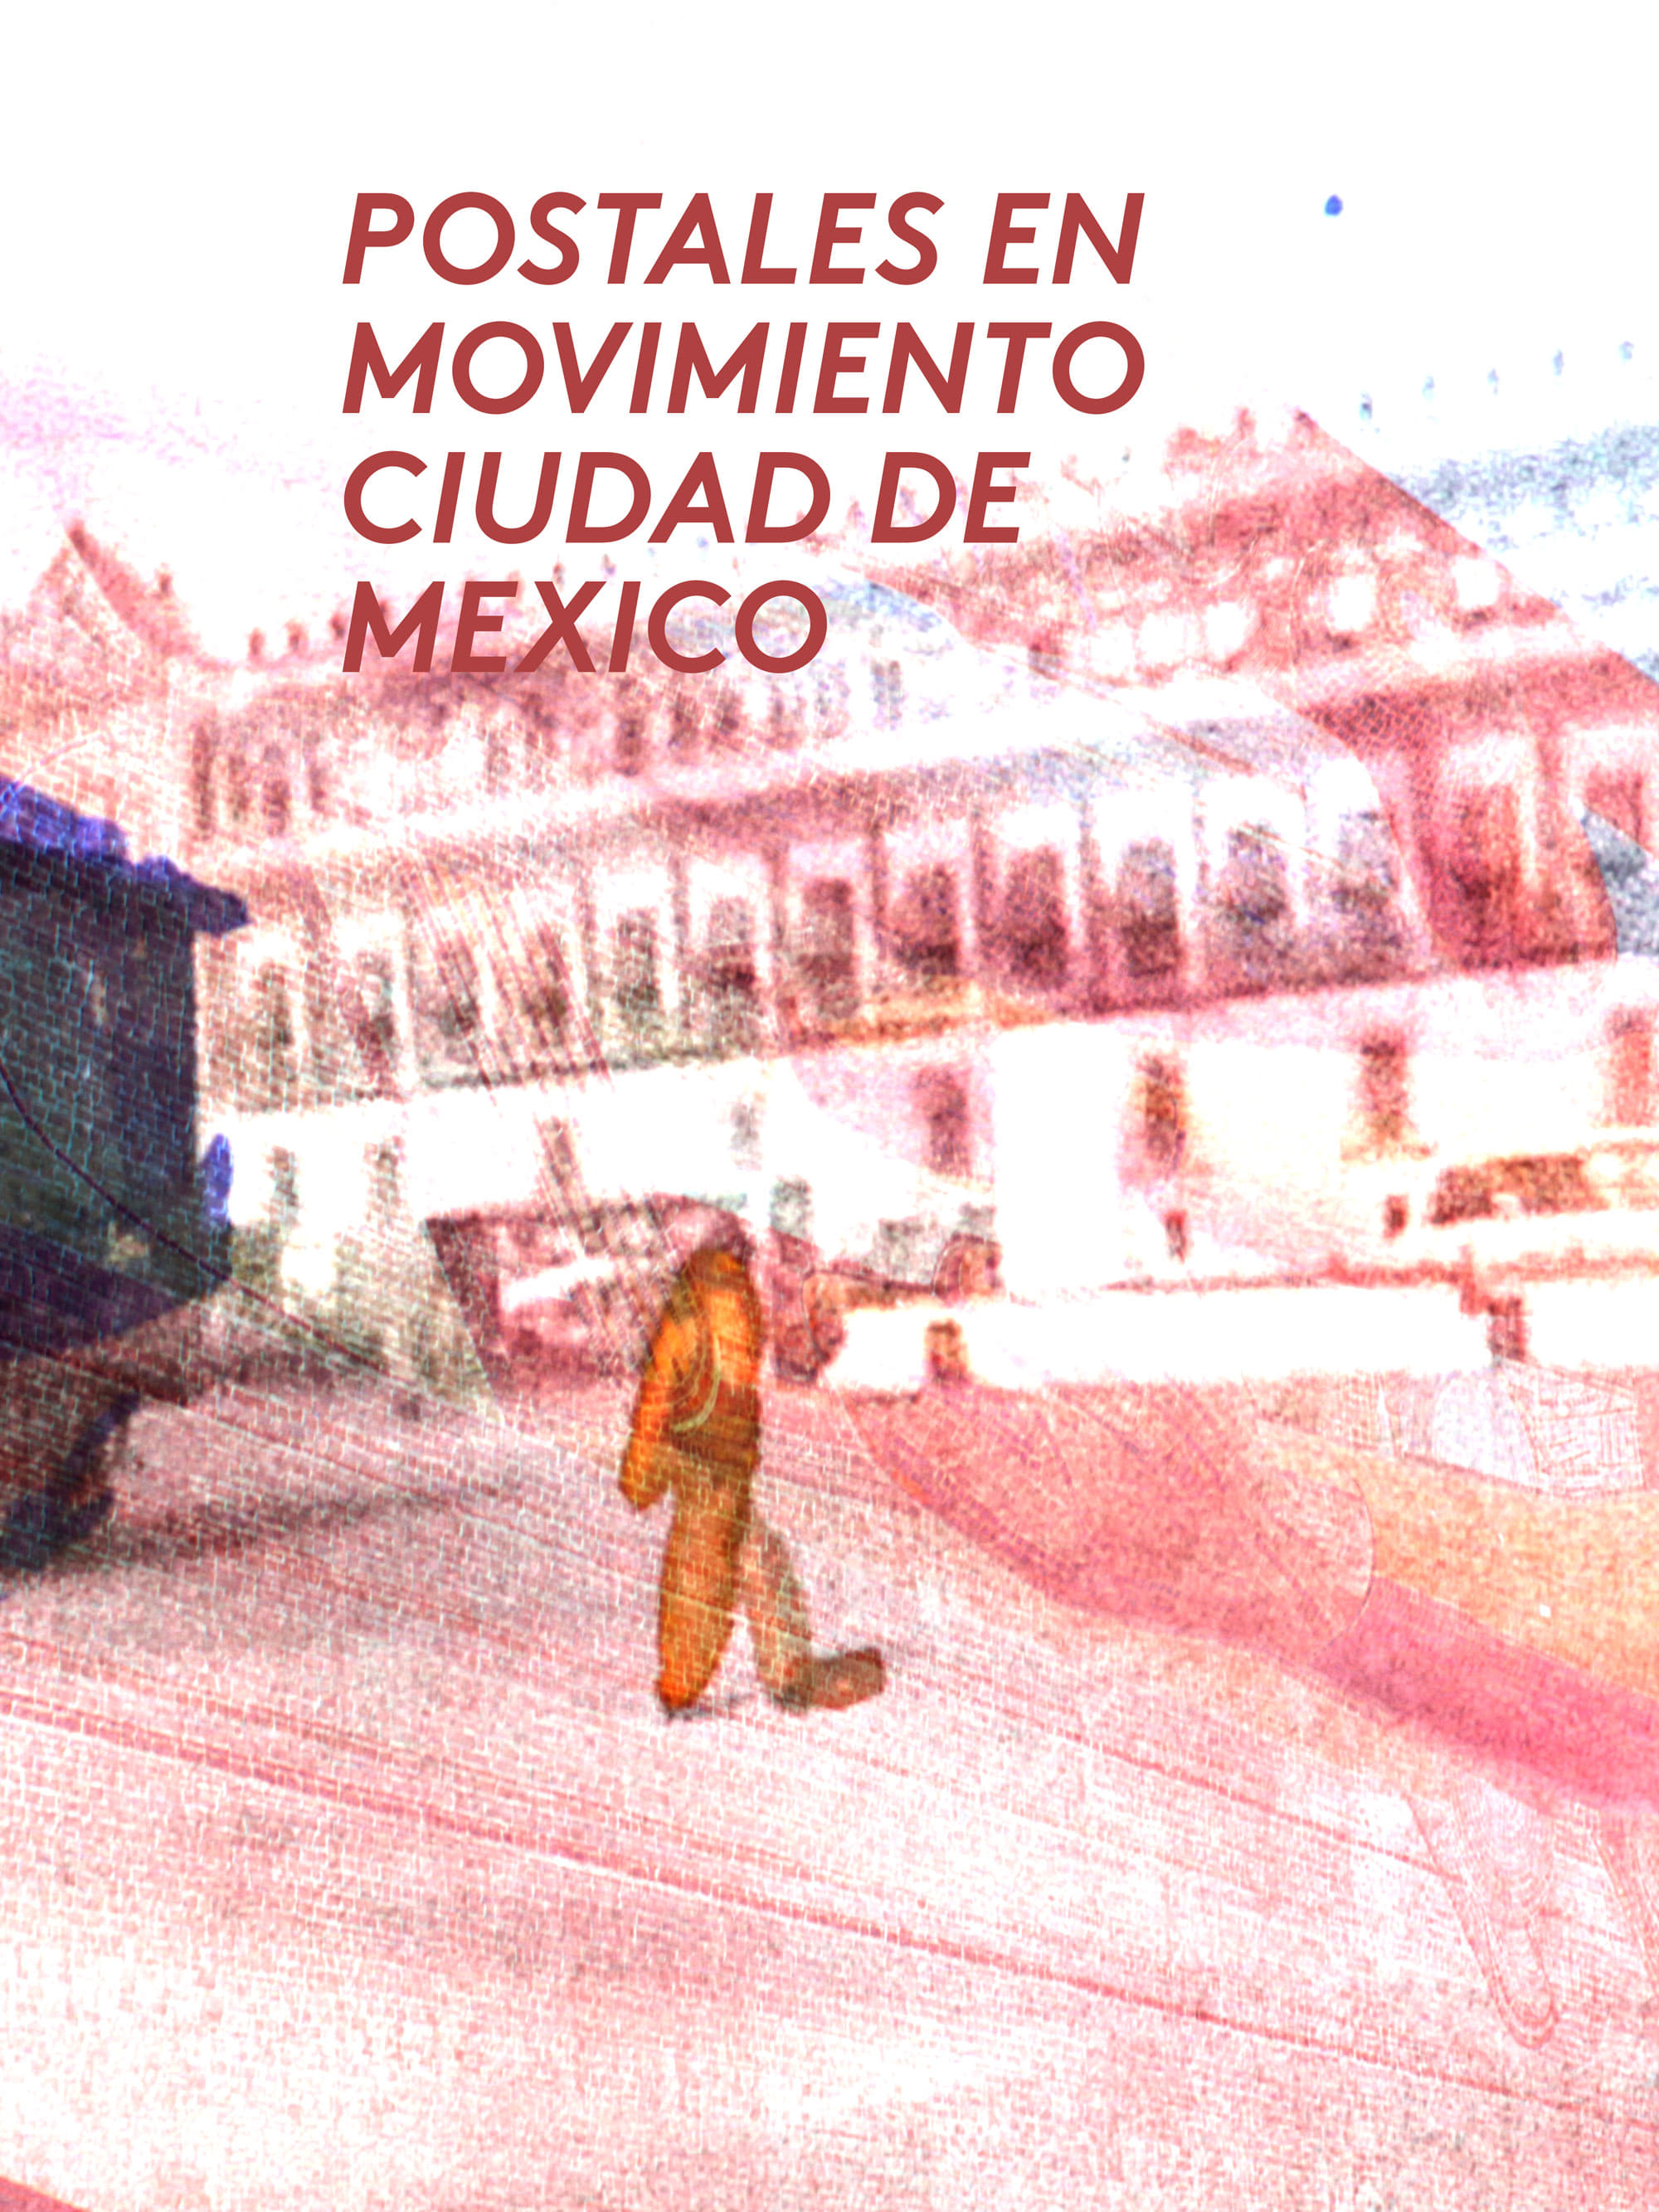 Postales en movimiento: Ciudad de mexico